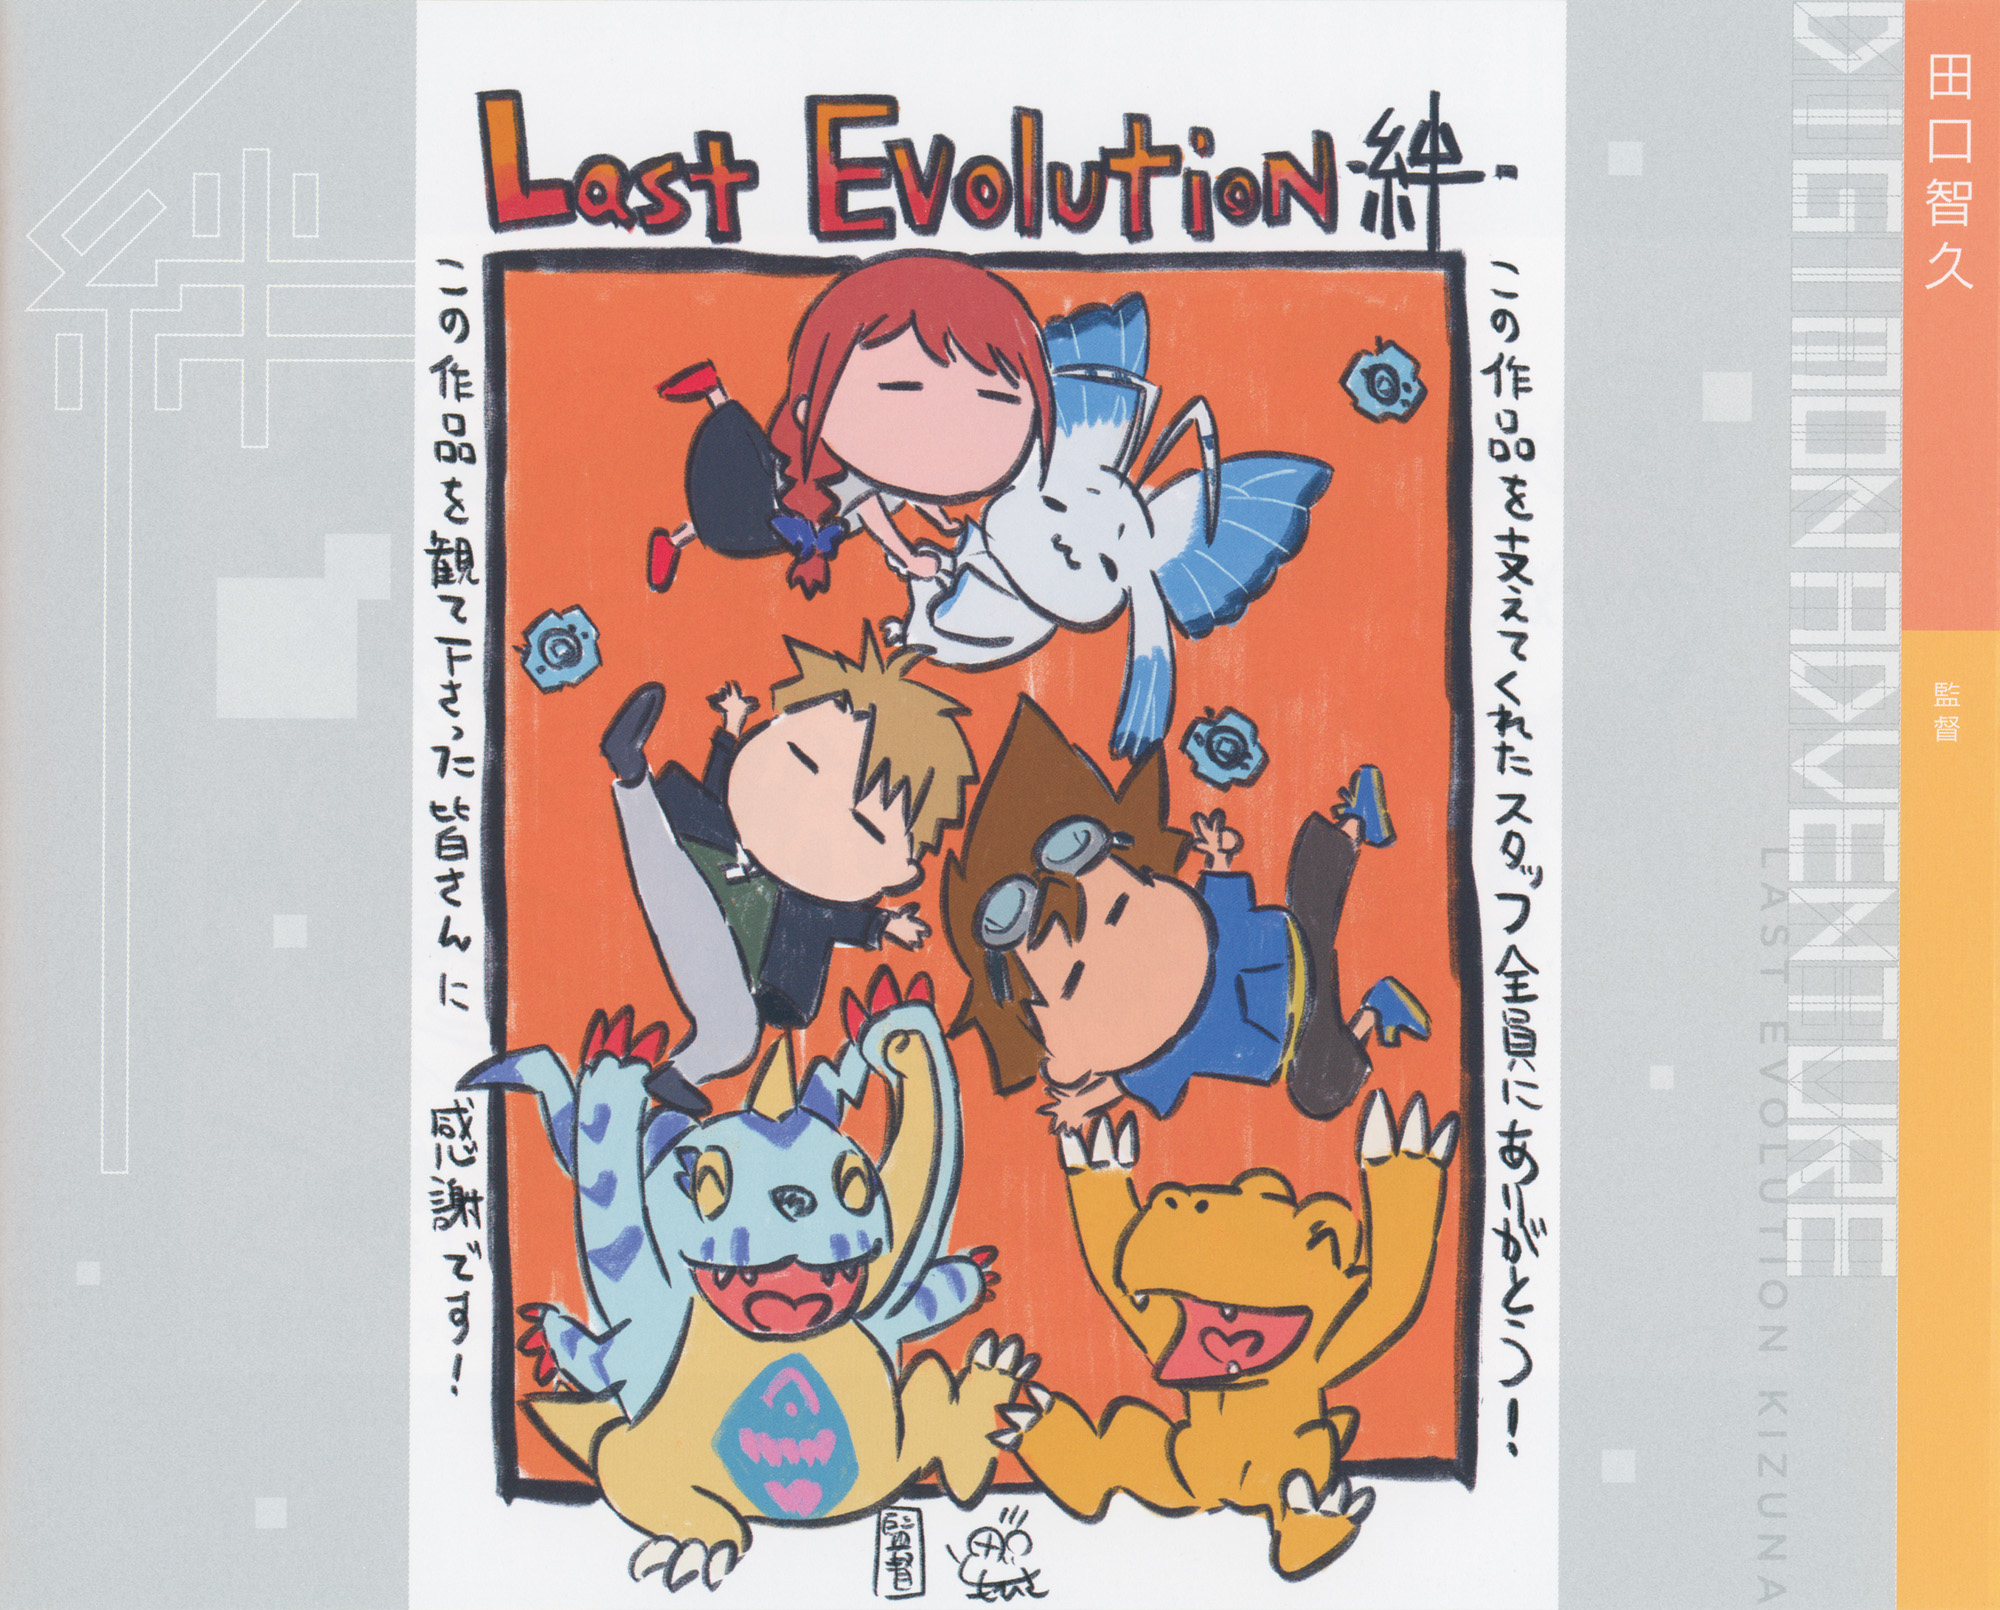 Digimon!!!!♥ on X: Digimon Adventure Last evolution Kizuna art